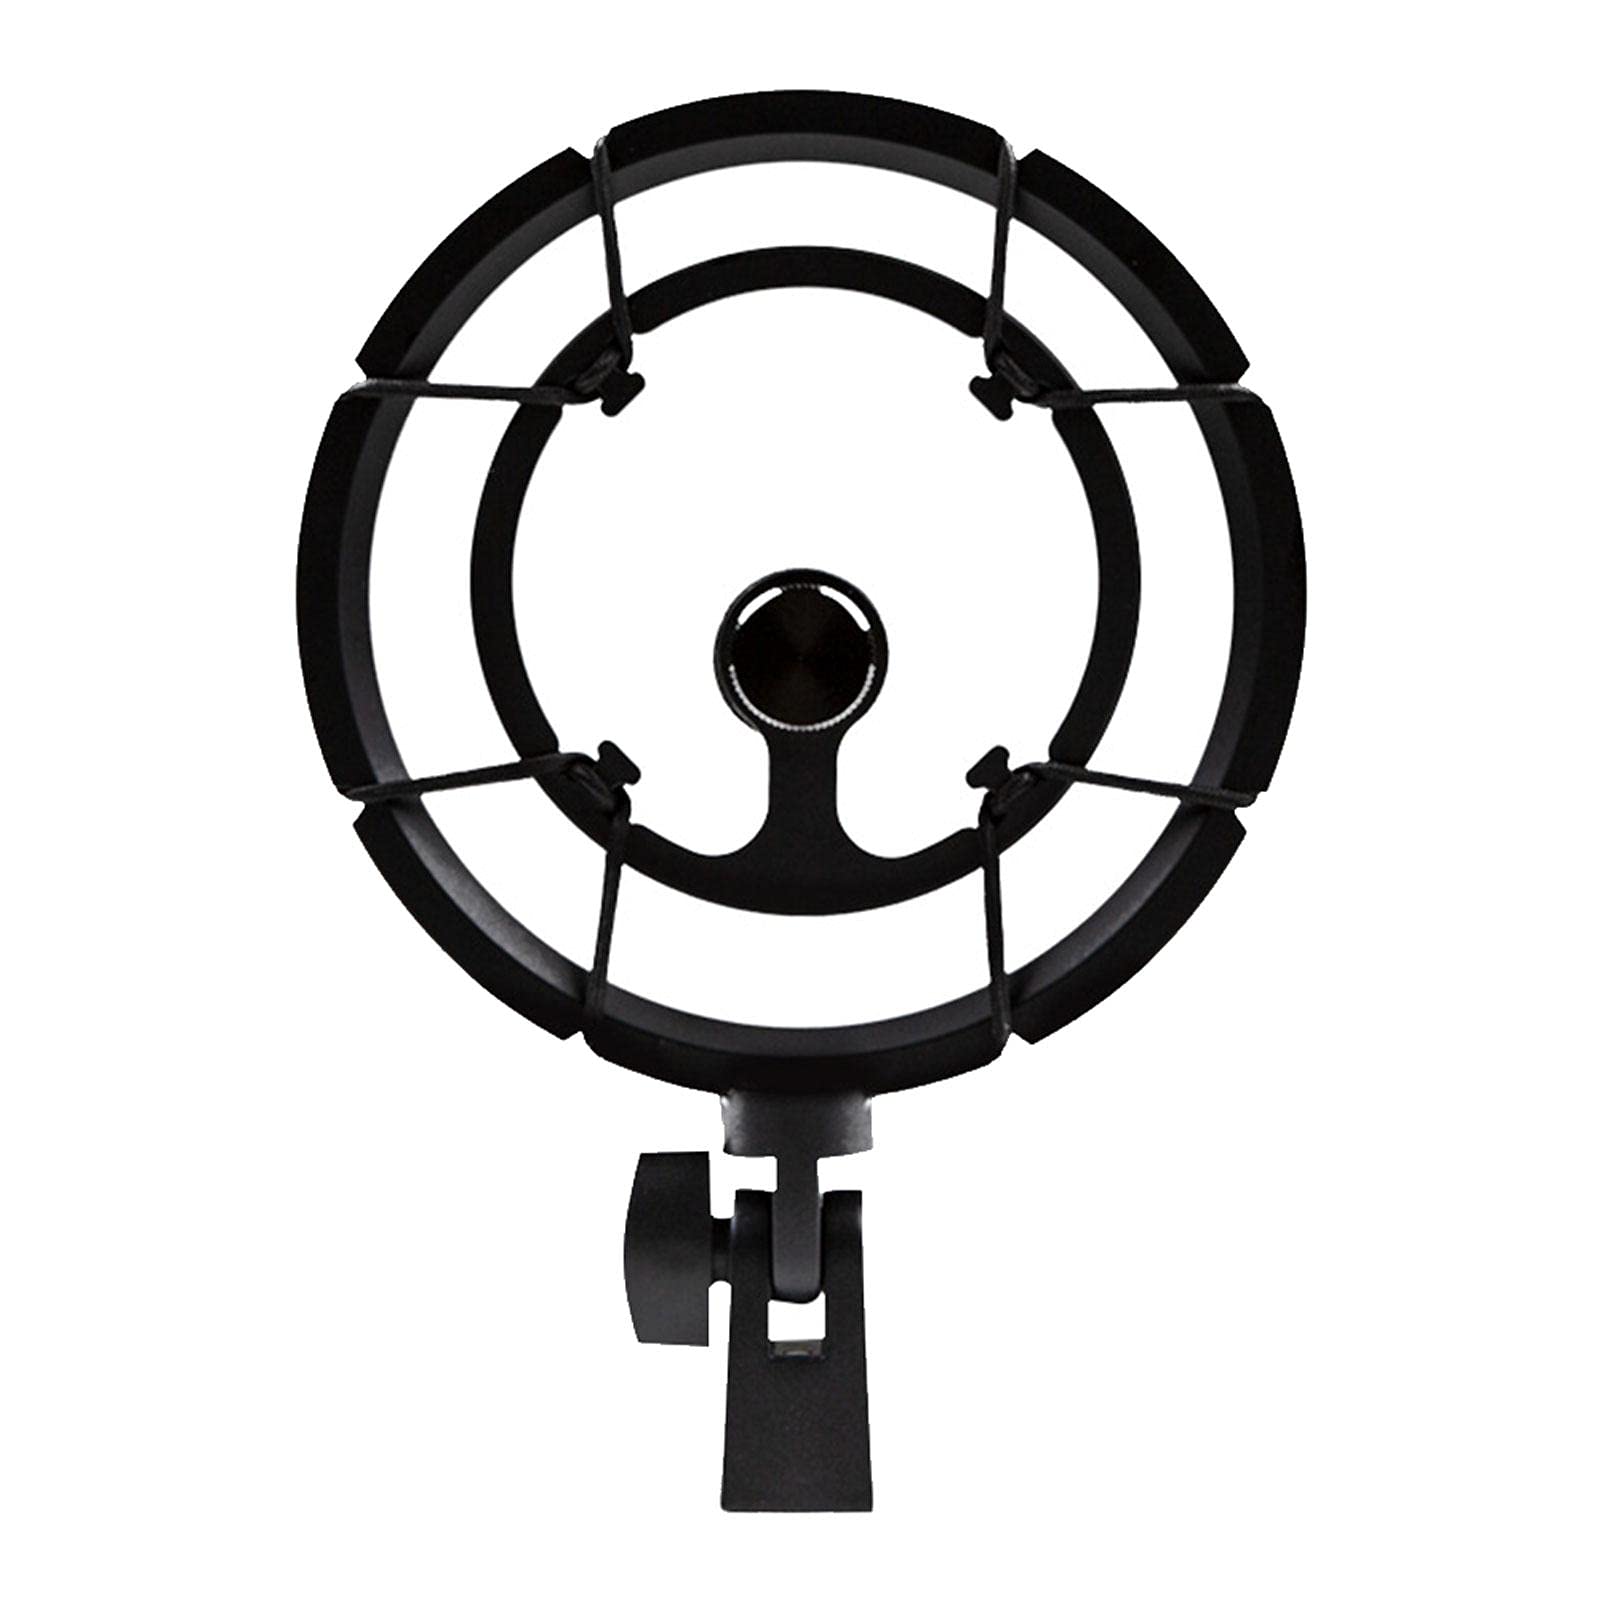 Fiacvrs Universal-Mikrofon-Stoßhalter-Adapter für Studio-Kondensator für Aufnahmestudios, Gesang, Live-Übertragungen (schwarz)